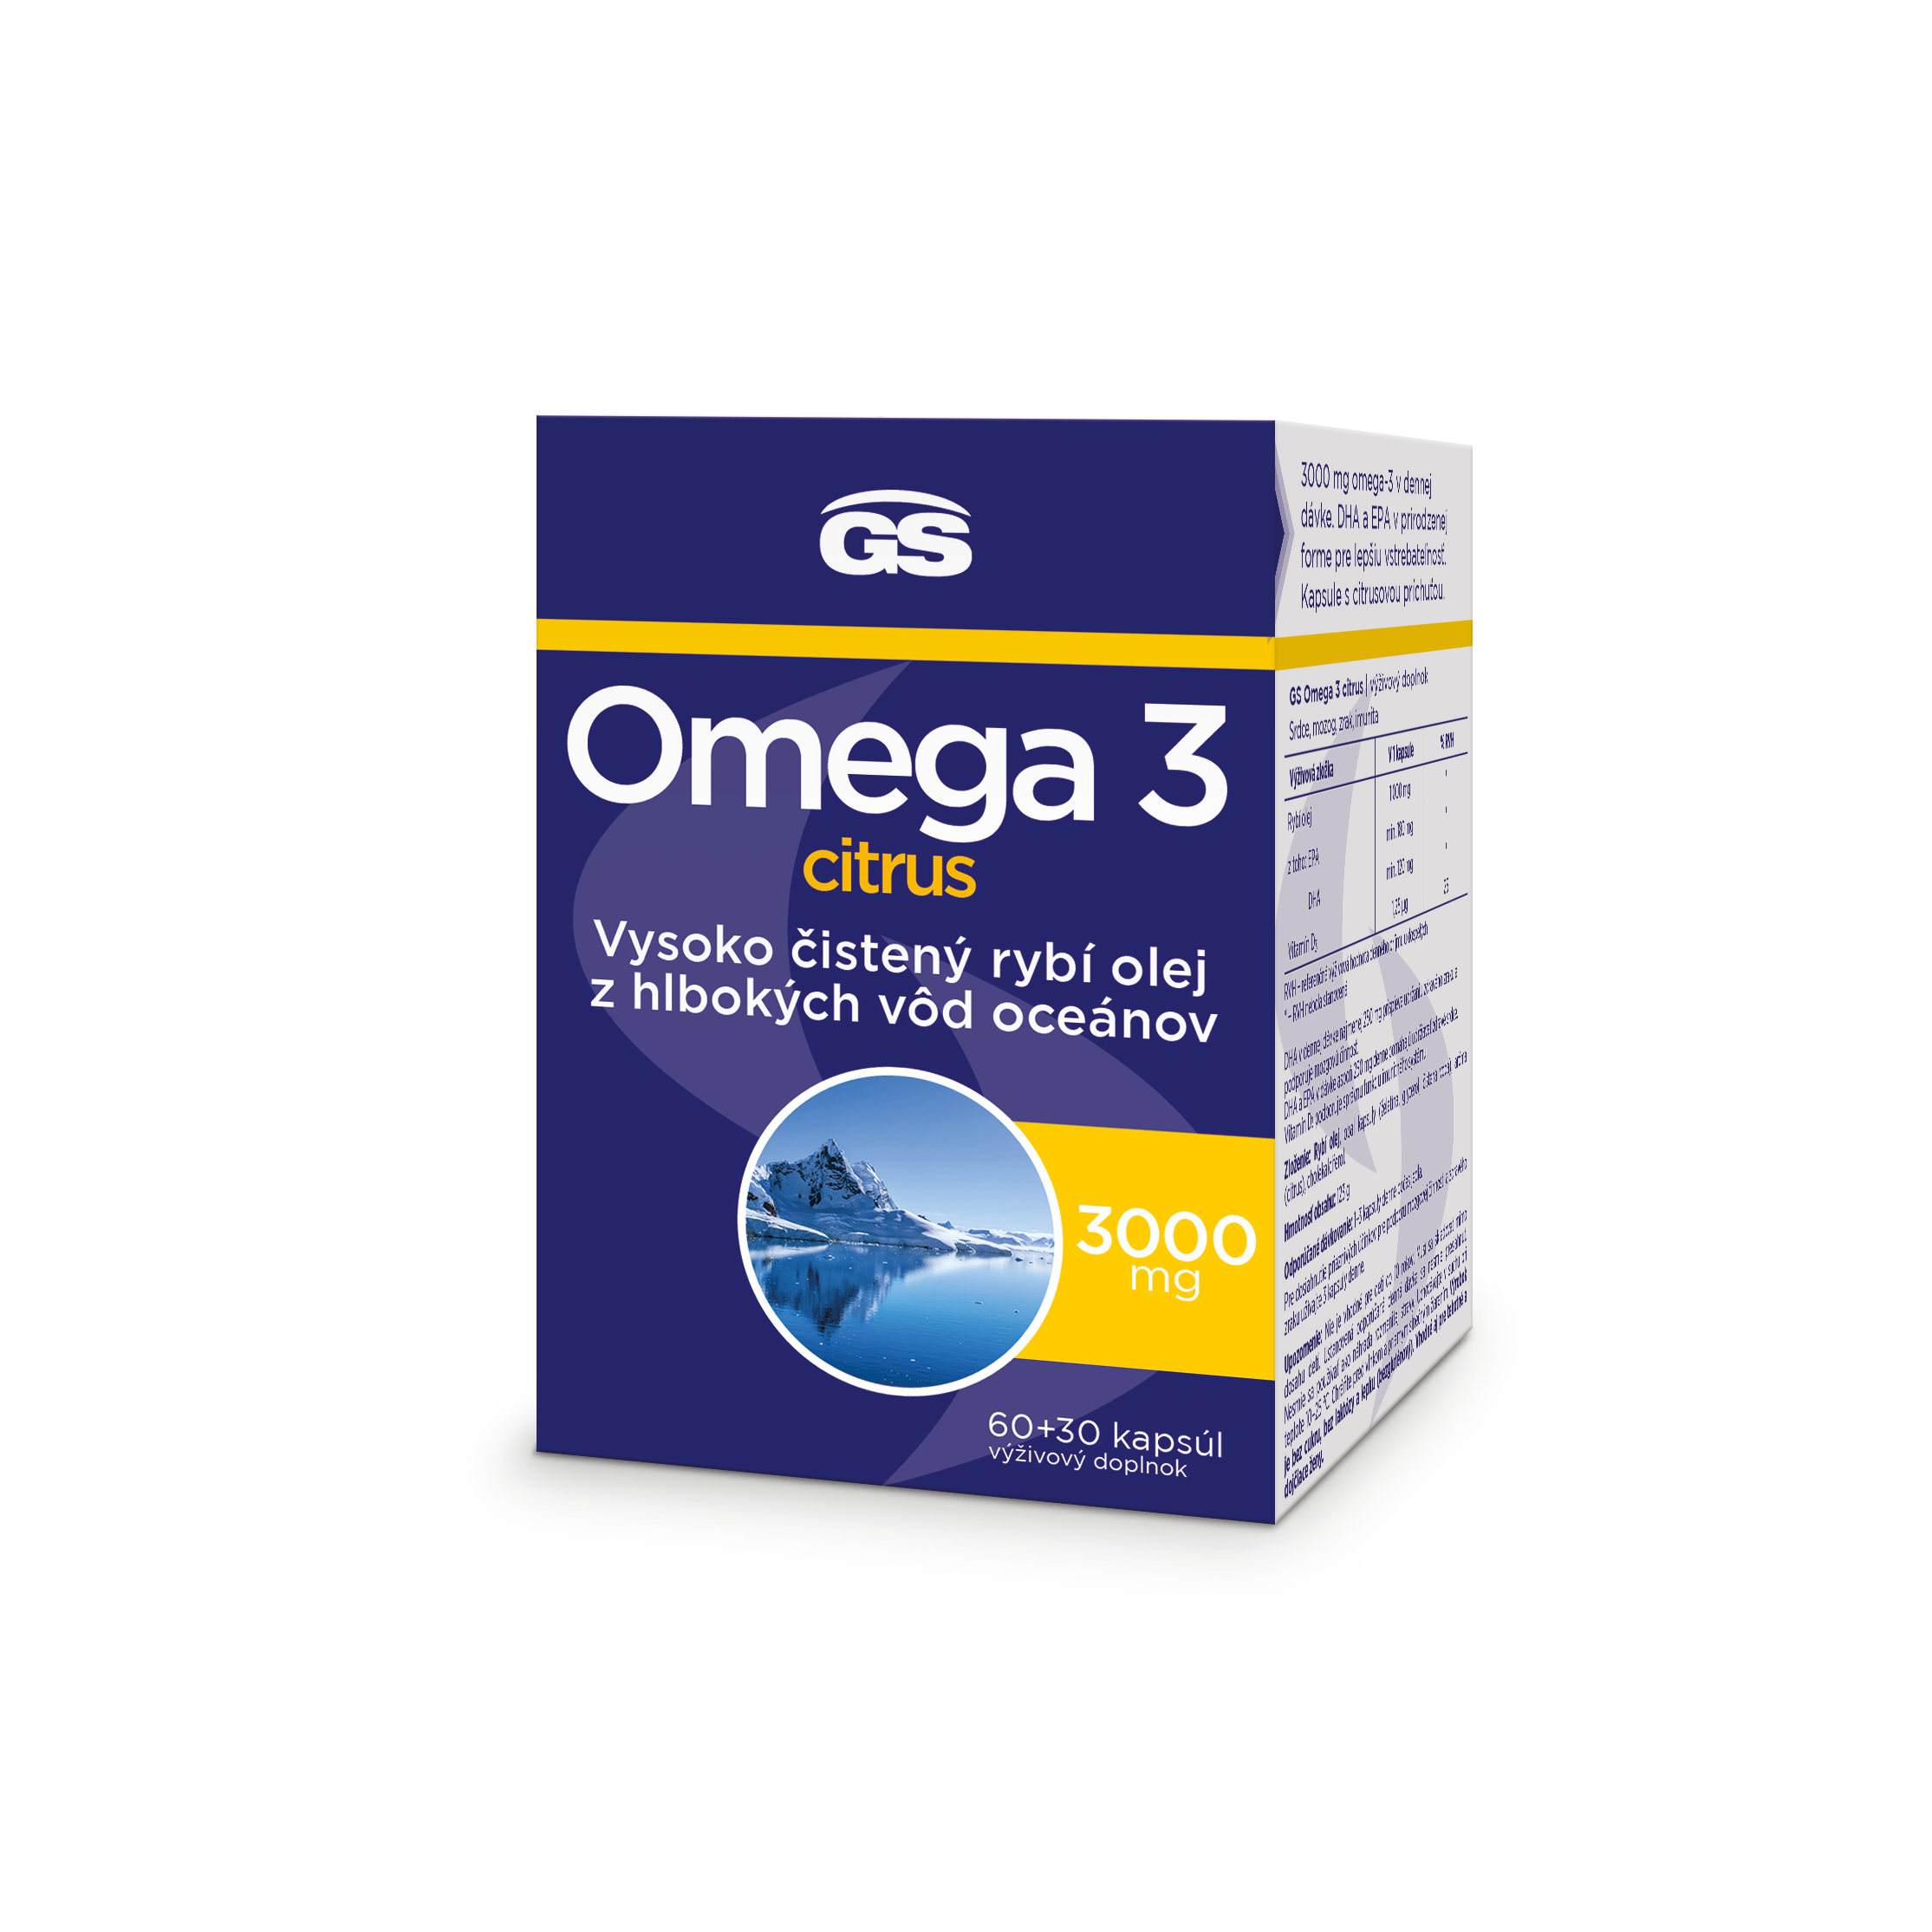 GS Omega 3 citrus, 6030 kapsúl